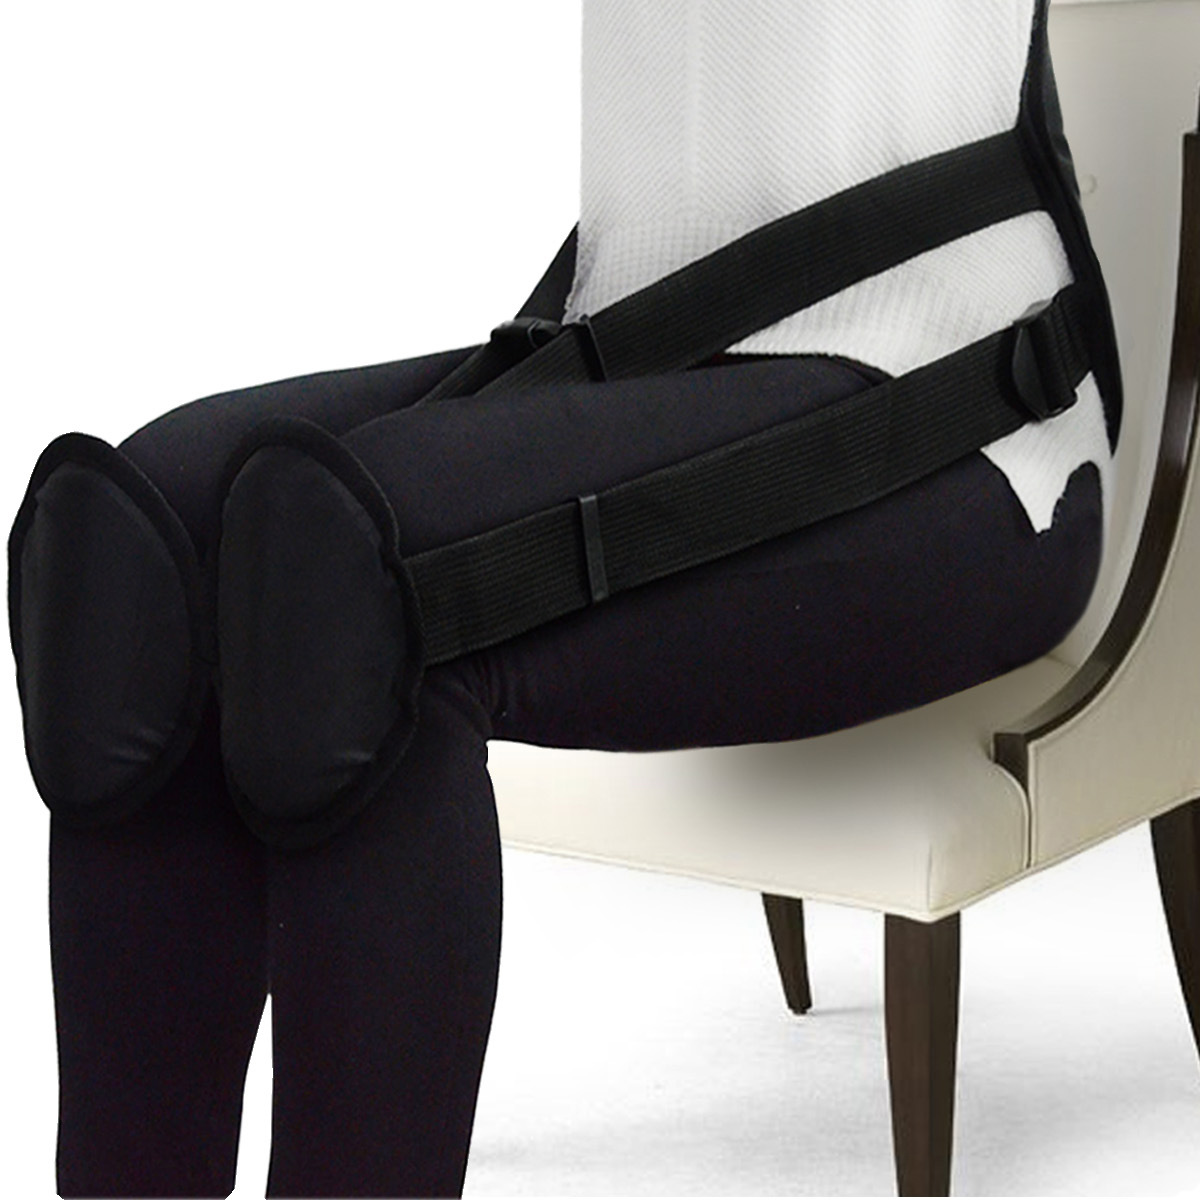 Correct Back Posture While Sitting Posture Corrector Back Support Brace Belt Adjustable Waist